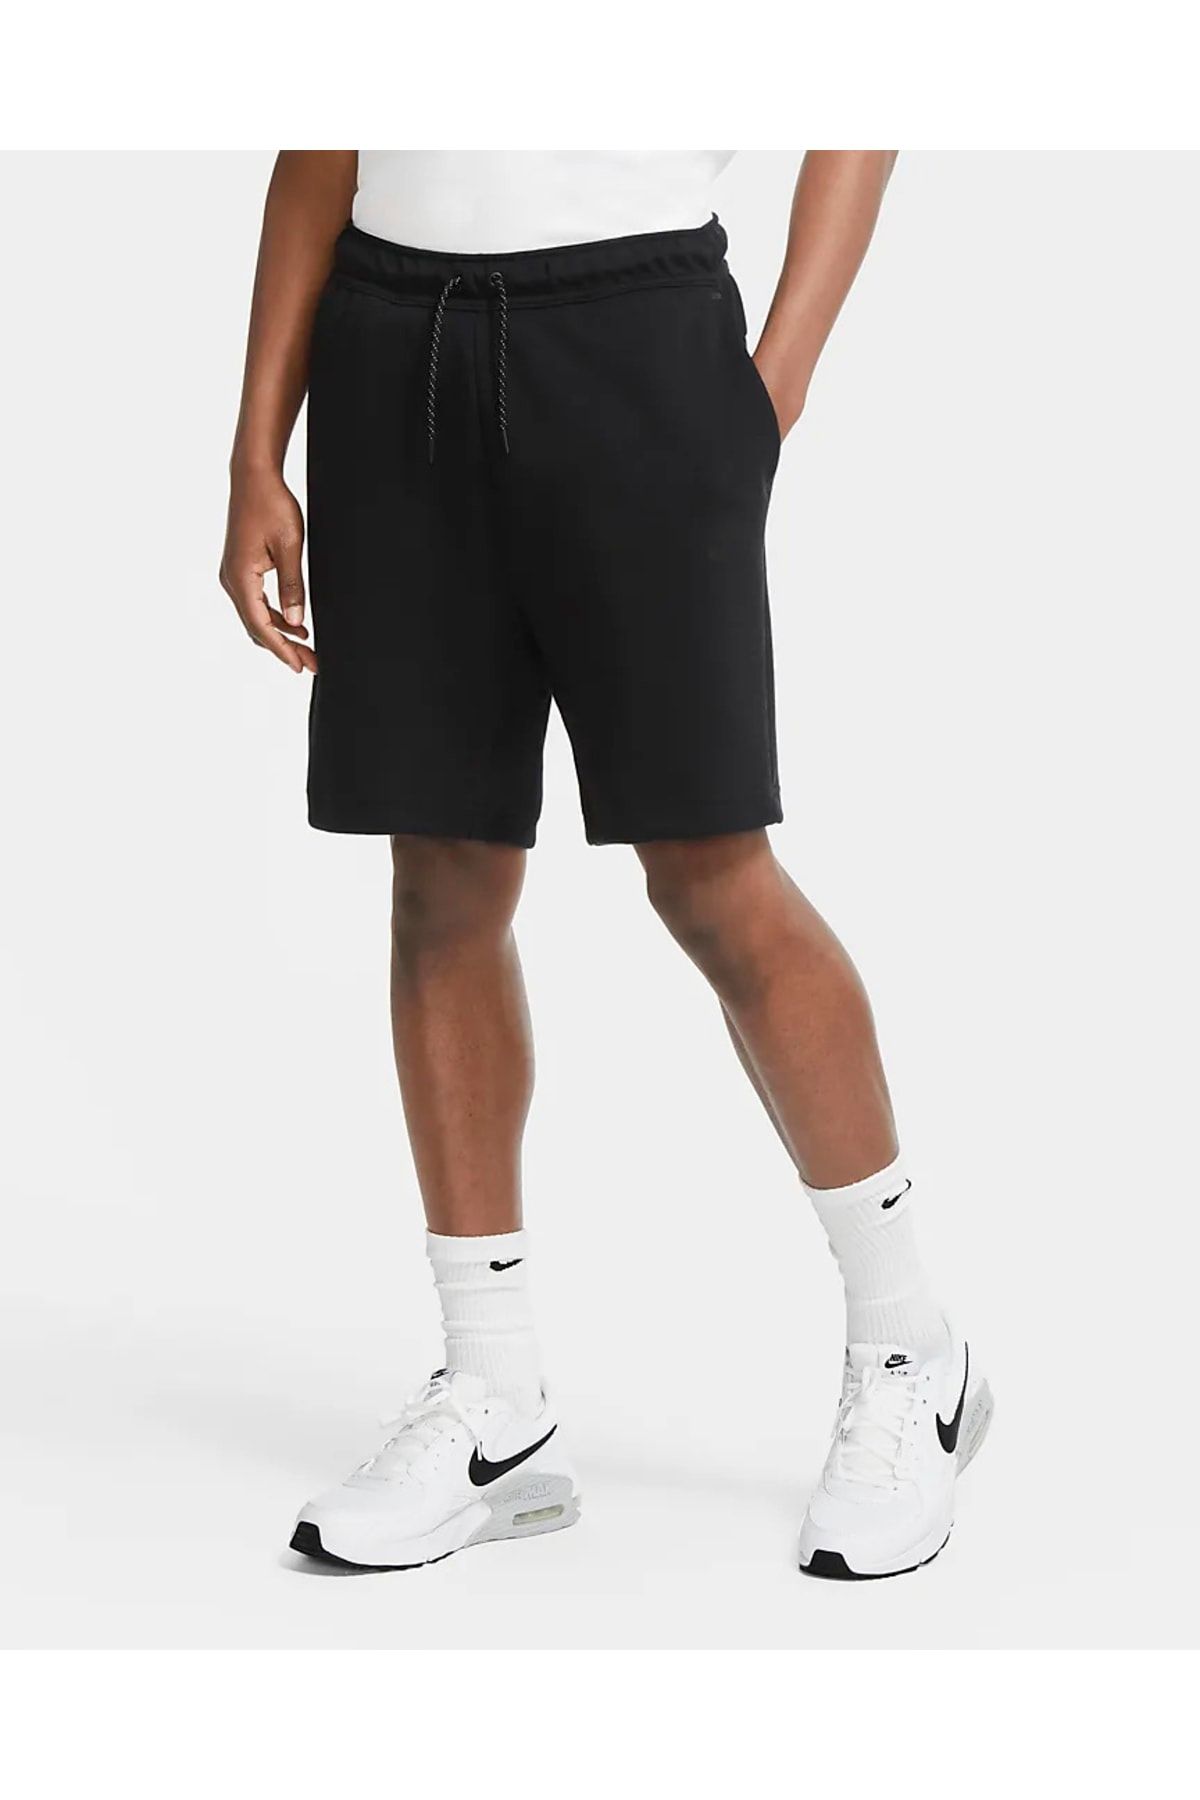 Nike Sportswear Tech Fleece Shorts Crimson Red/Black